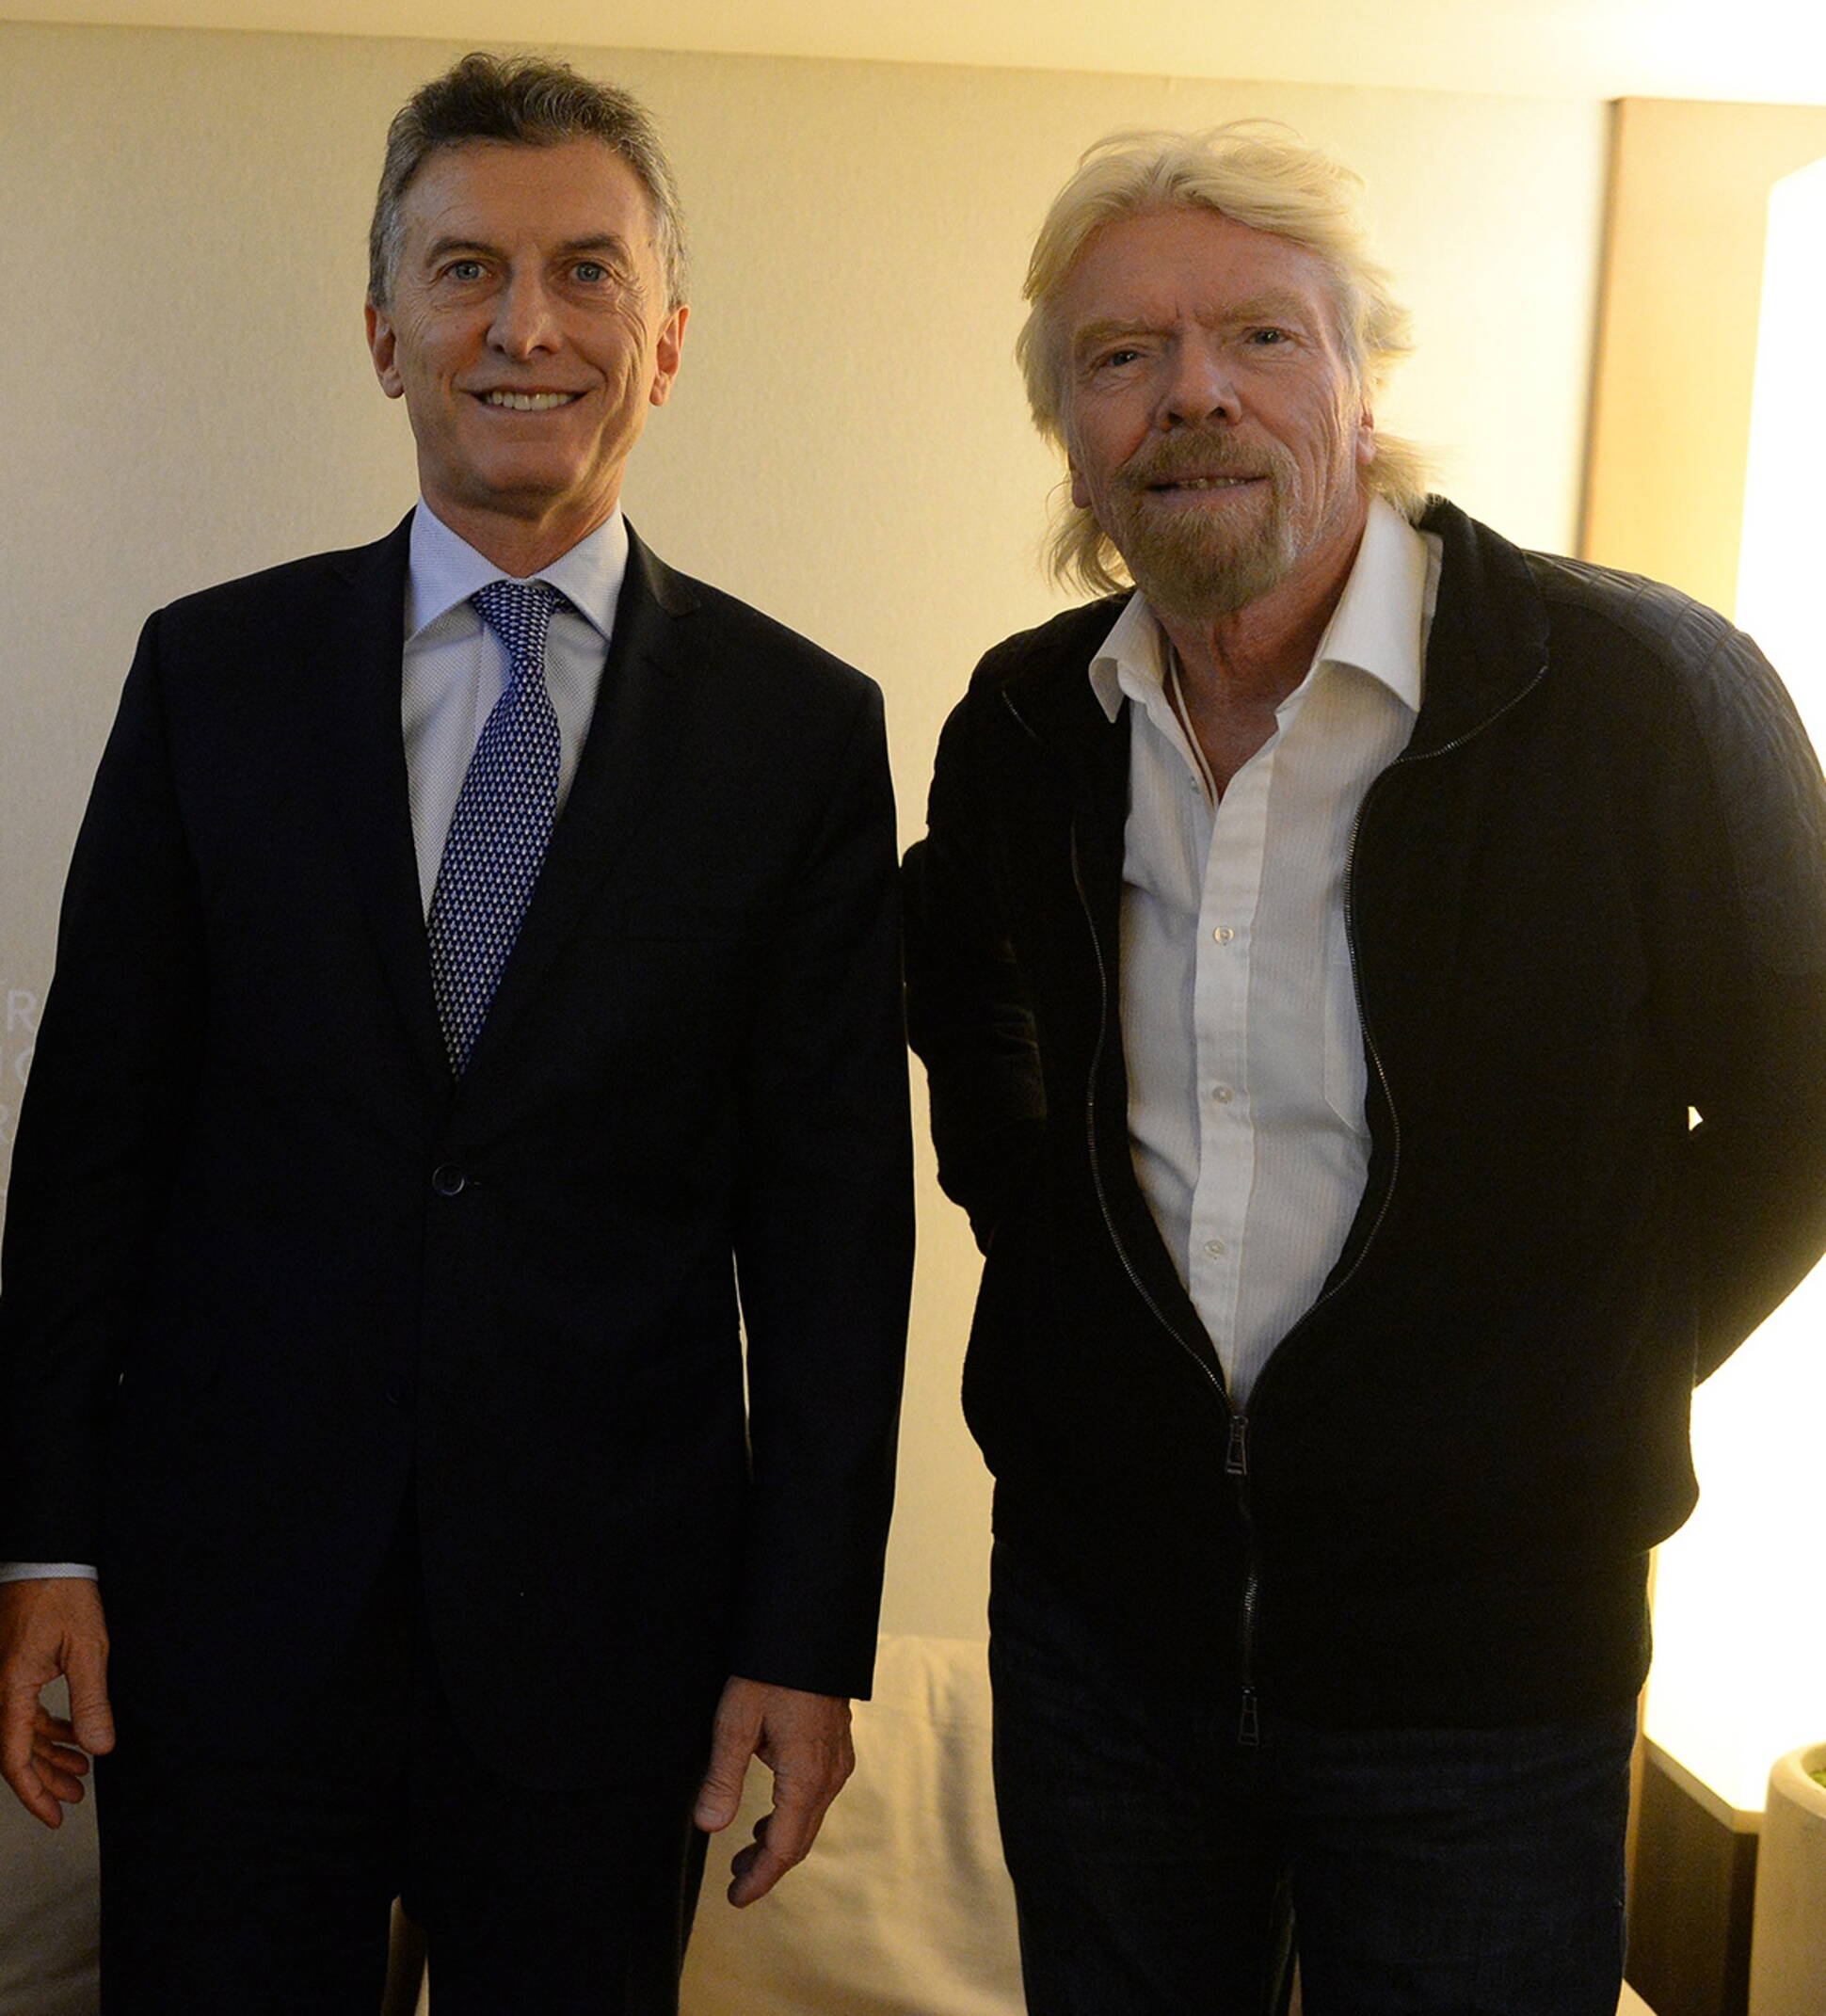 El Presidente se reunió con  Sir Richard Branson, fundador del Virgin Group.